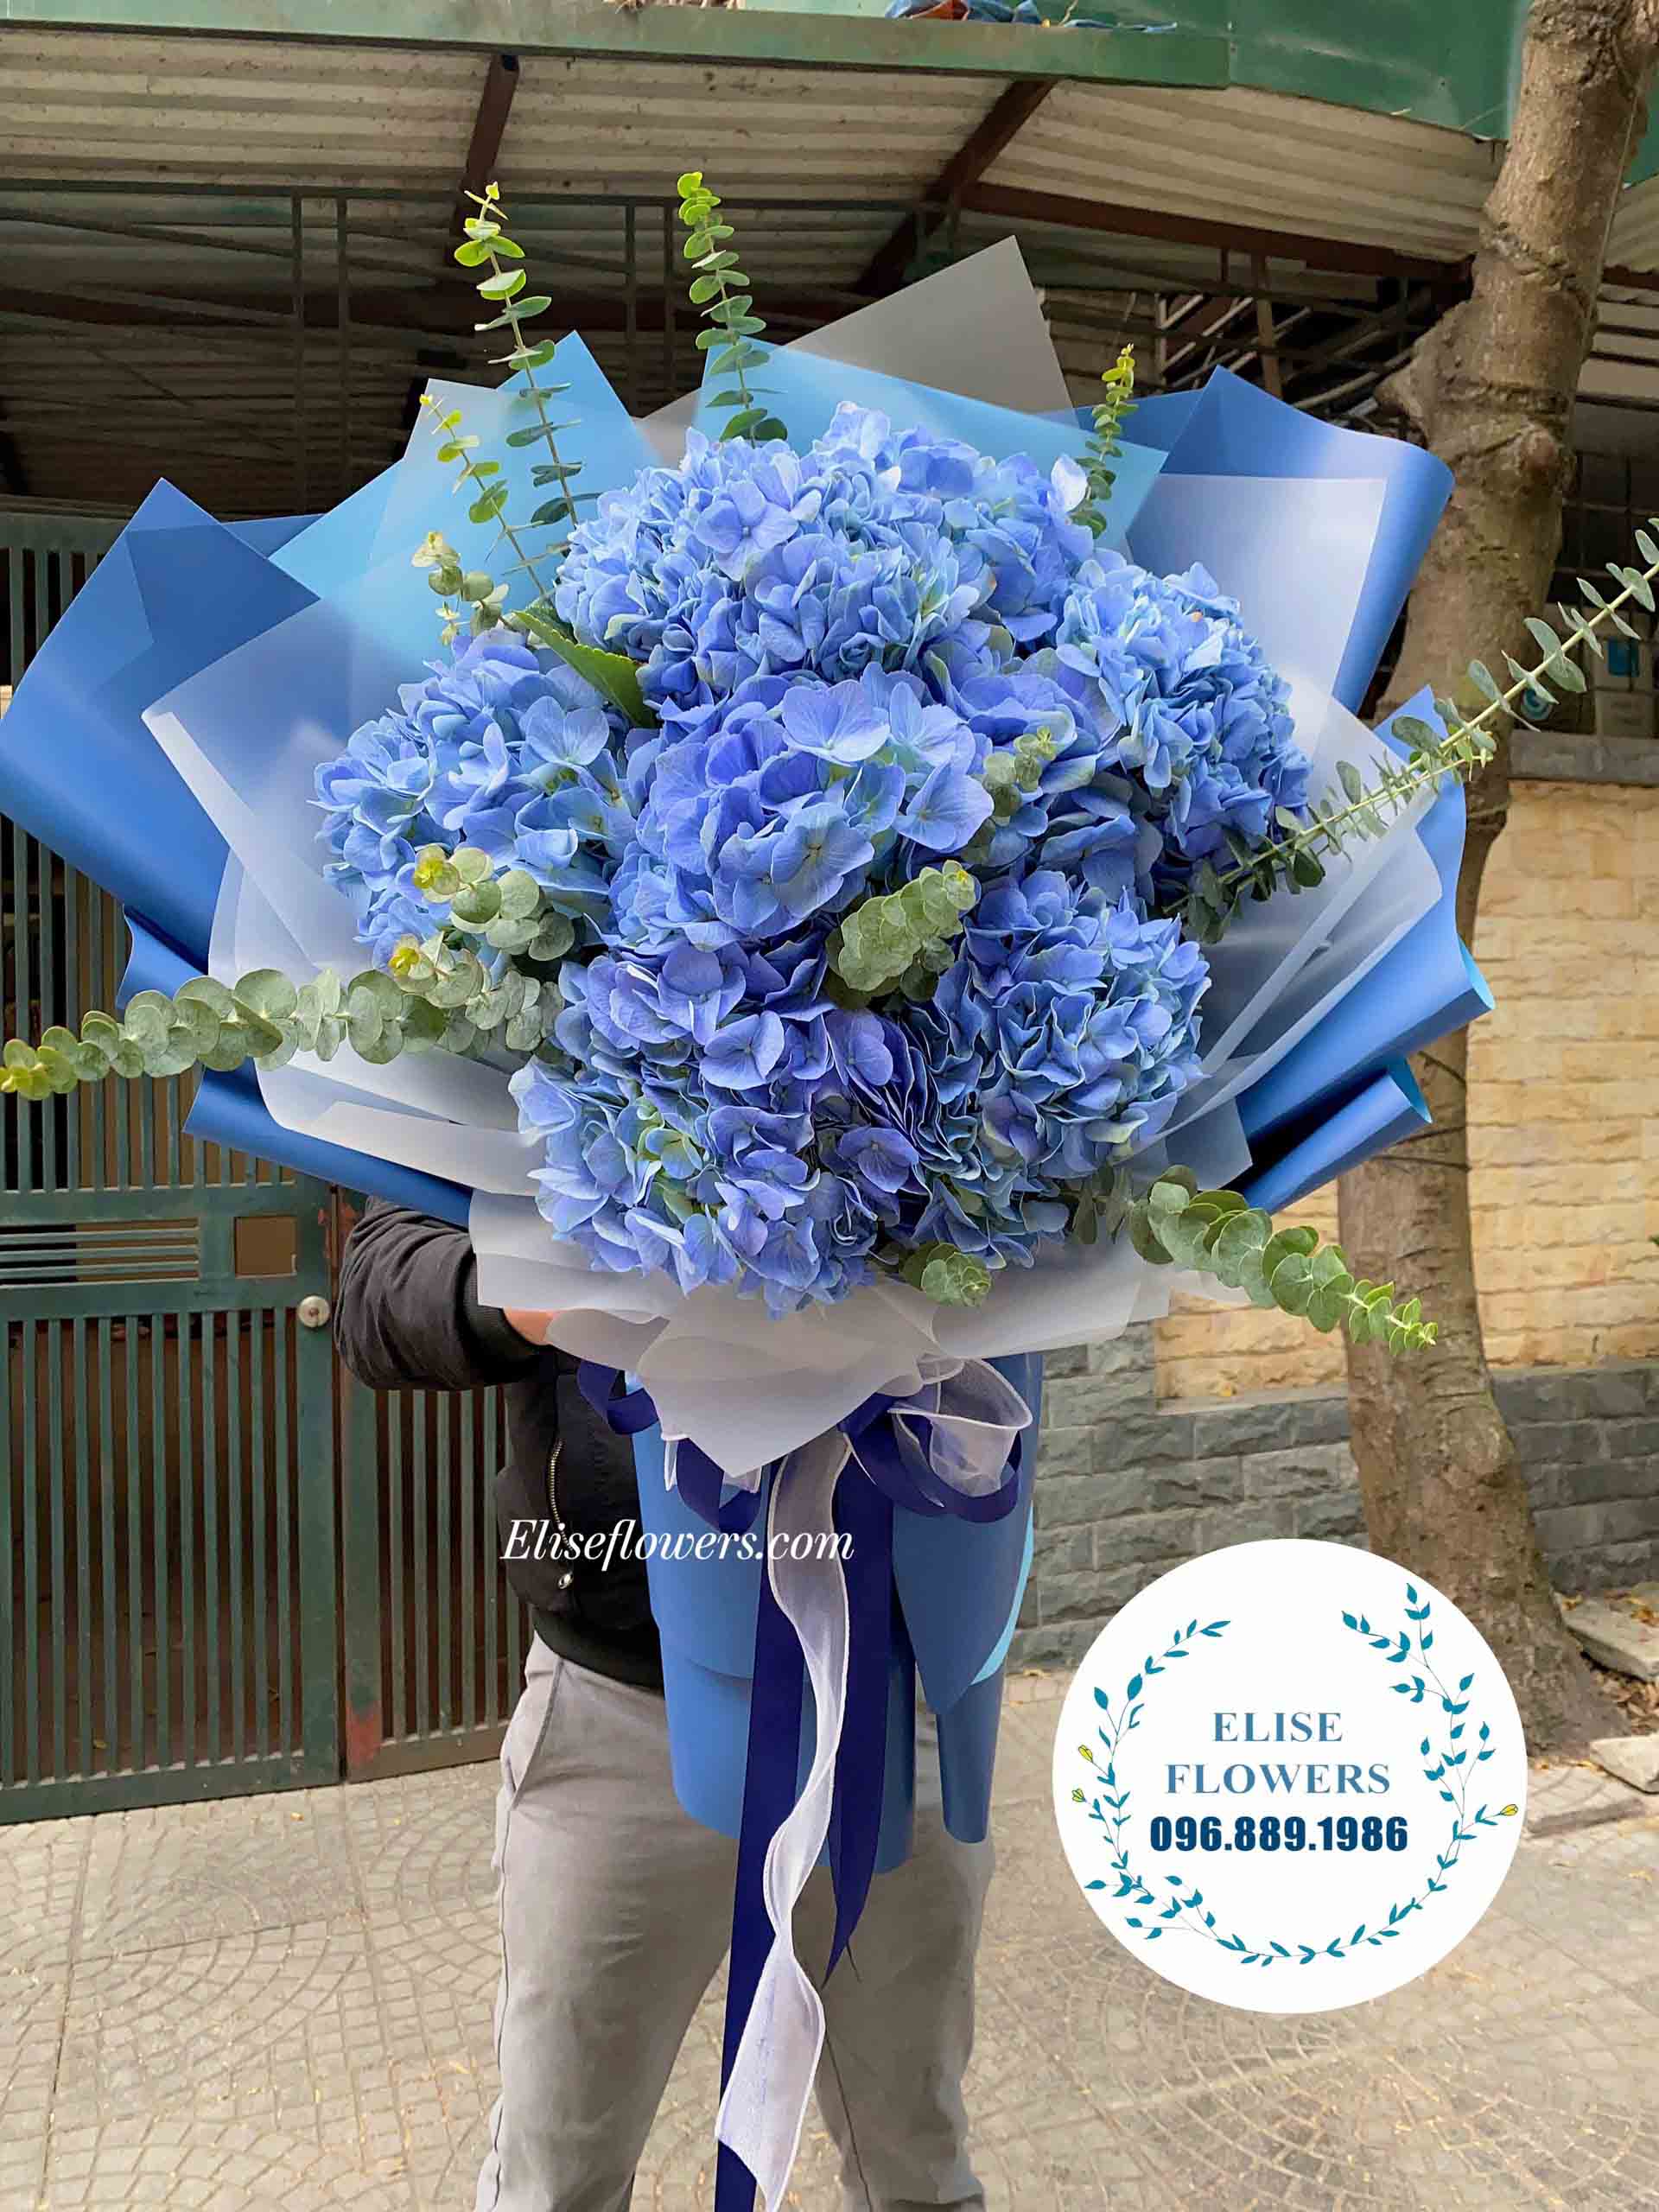 Bó hoa đẹp | Hoa tươi Hà Nội | Bó hoa cẩm tú cầu xanh 7 bông đẹp tinh tế | Hoa sinh nhật Hà Nội 